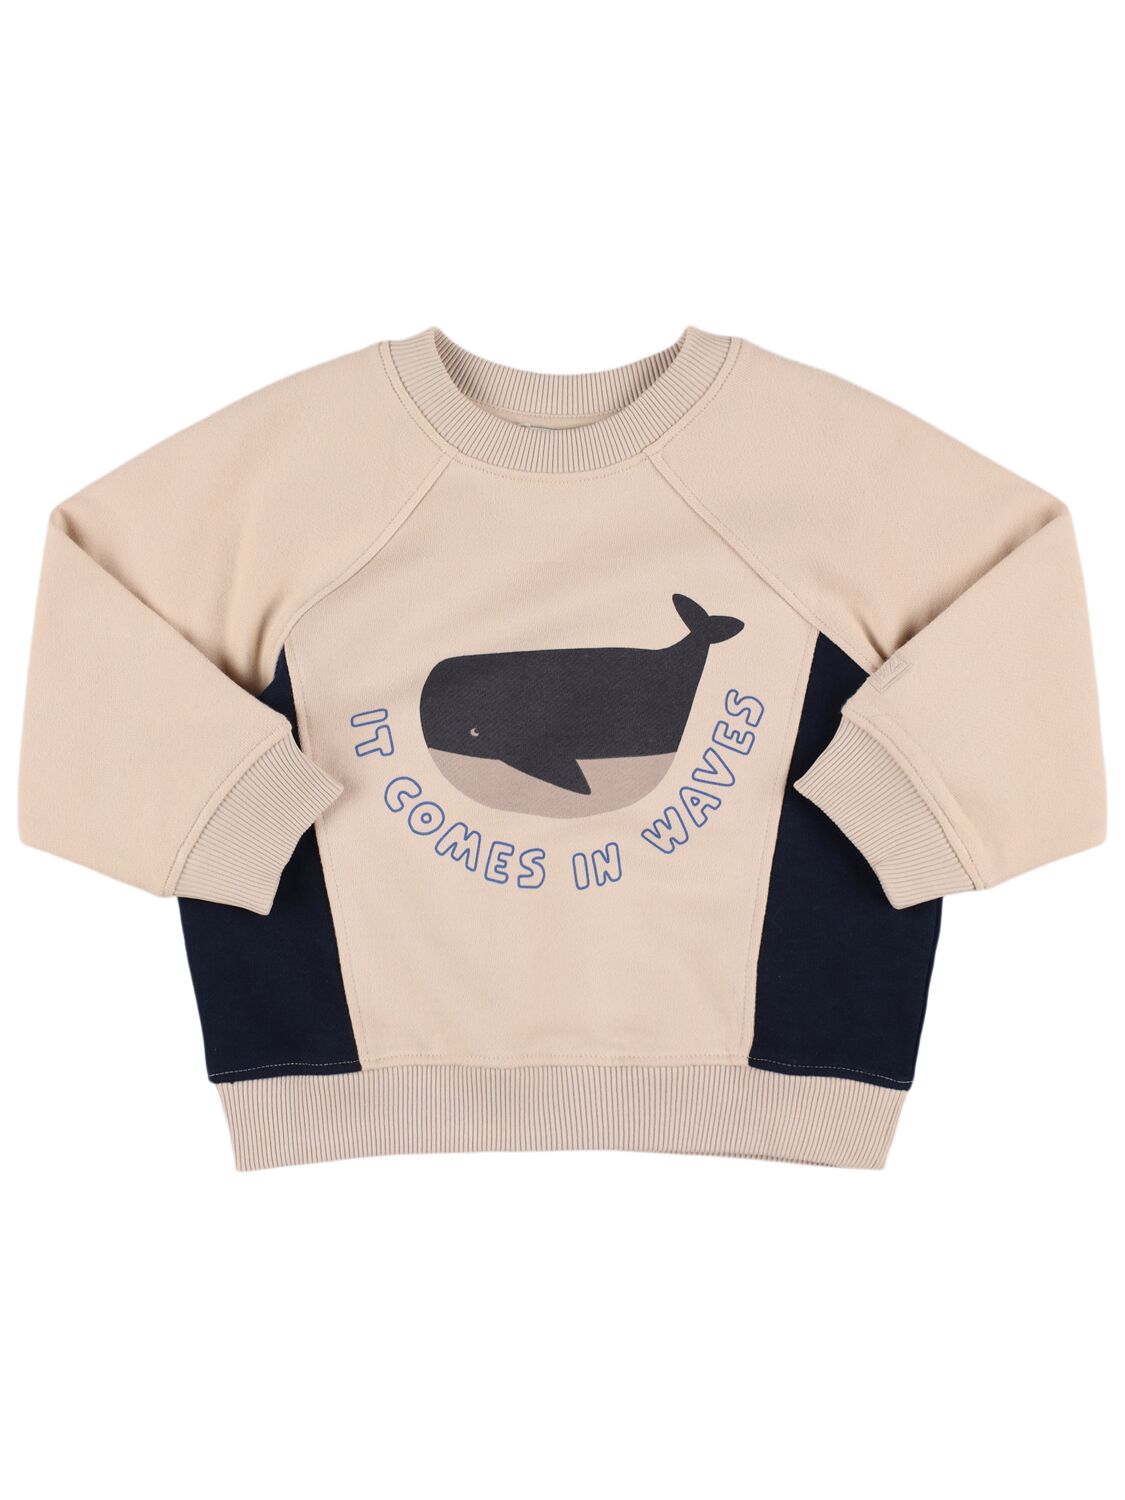 Image of Oversize Printed Cotton Sweatshirt